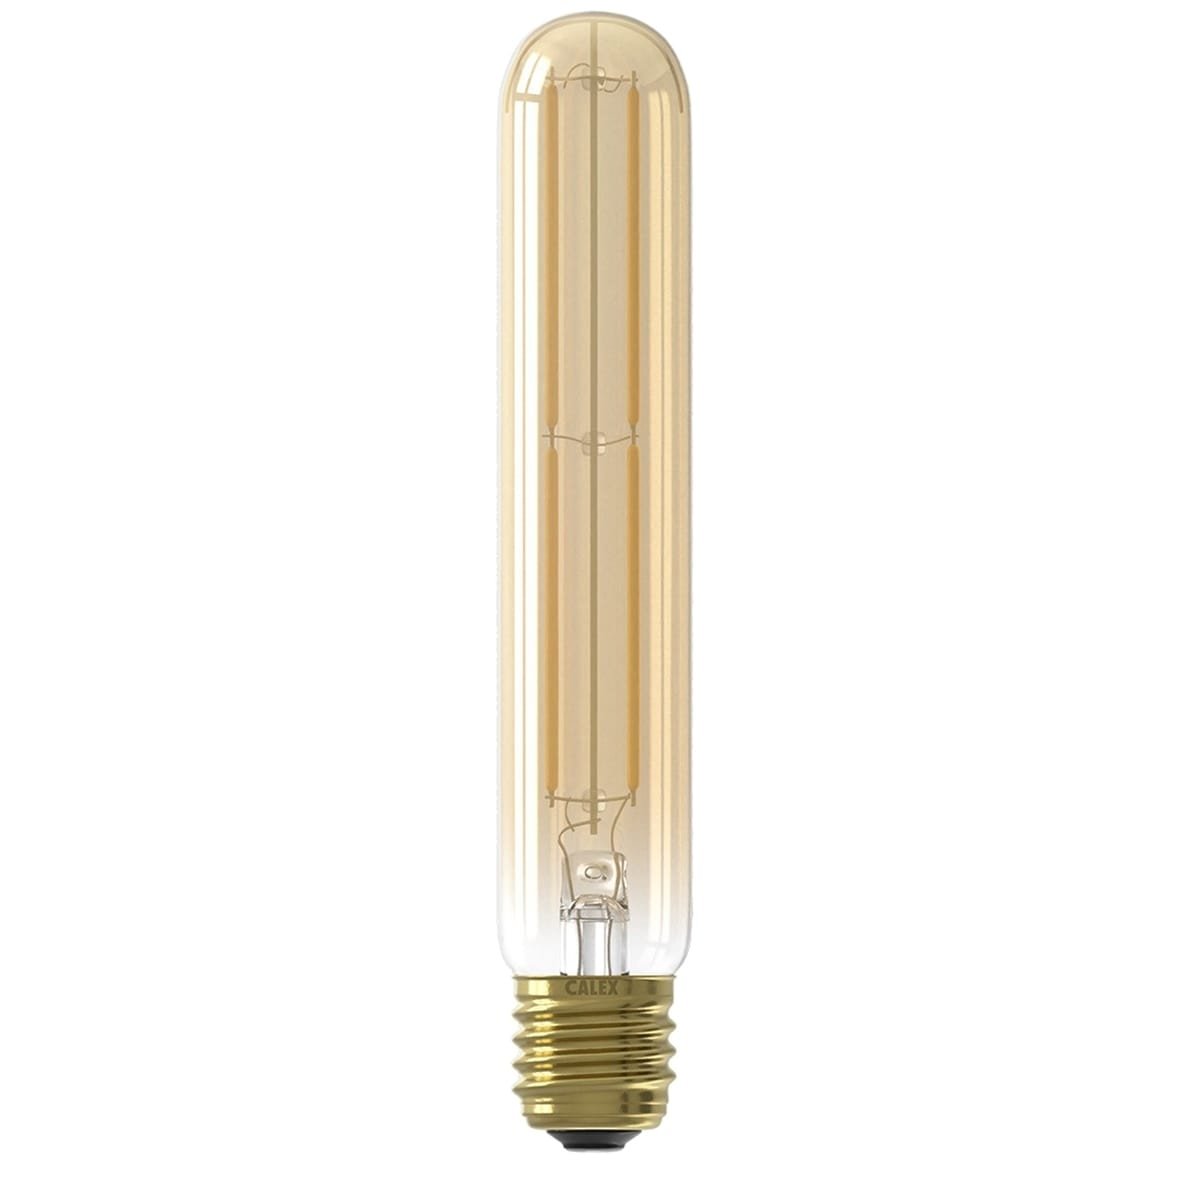 Außenbeleuchtung Lichtquellen Led röhrenlampe filament Tube Gold - 4W